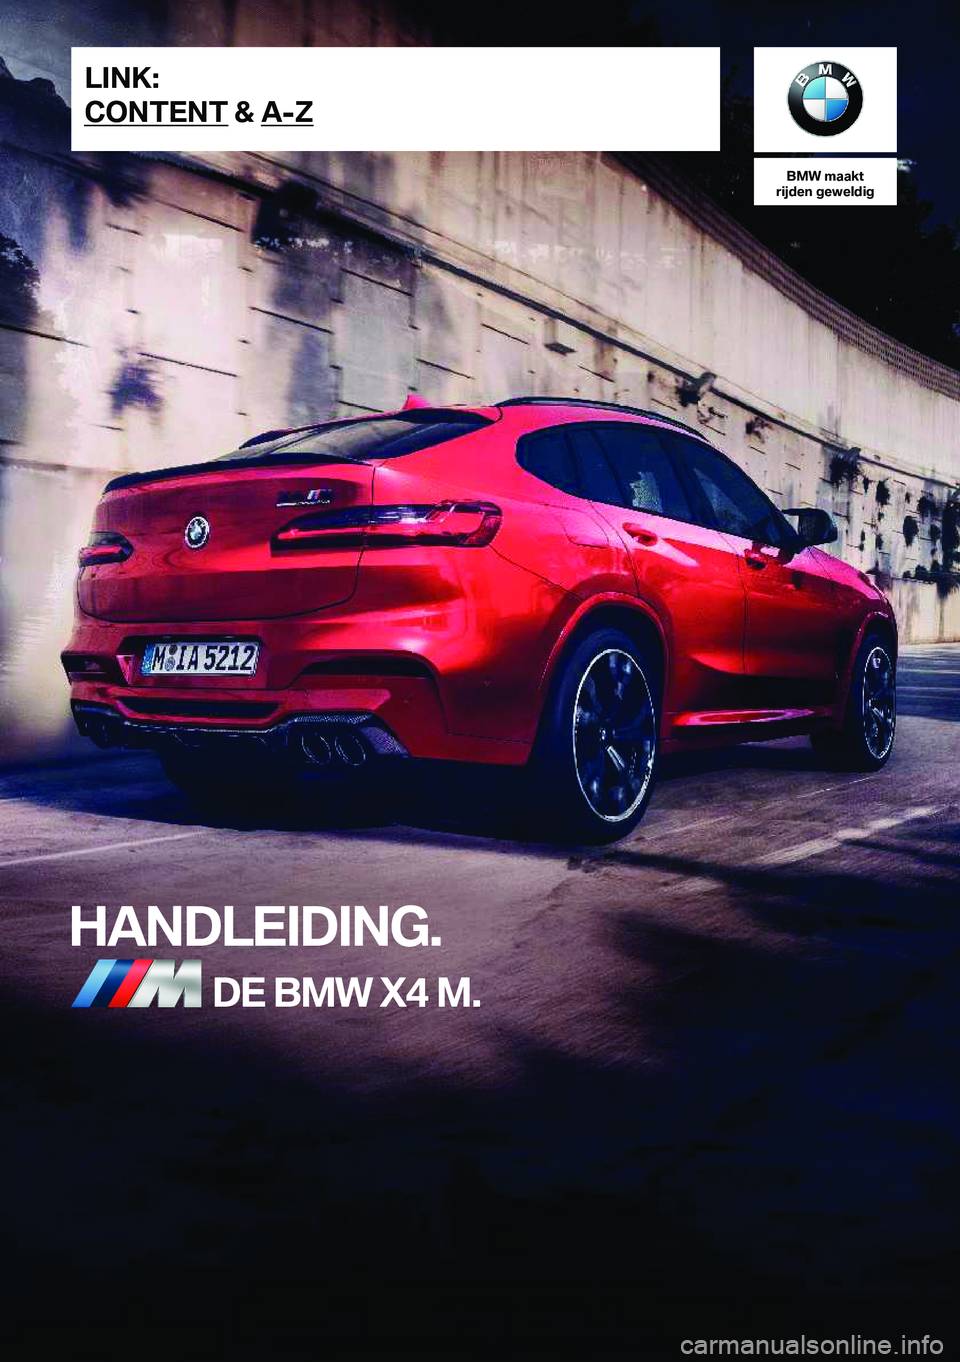 BMW X4 M 2020  Instructieboekjes (in Dutch) �B�M�W��m�a�a�k�t
�r�i�j�d�e�n��g�e�w�e�l�d�i�g
�H�A�N�D�L�E�I�D�I�N�G�.�D�E��B�M�W��X�4��M�.�L�I�N�K�:
�C�O�N�T�E�N�T��&��A�-�Z�O�n�l�i�n�e��E�d�i�t�i�o�n��f�o�r��P�a�r�t��n�o�.��0�1�4�0�